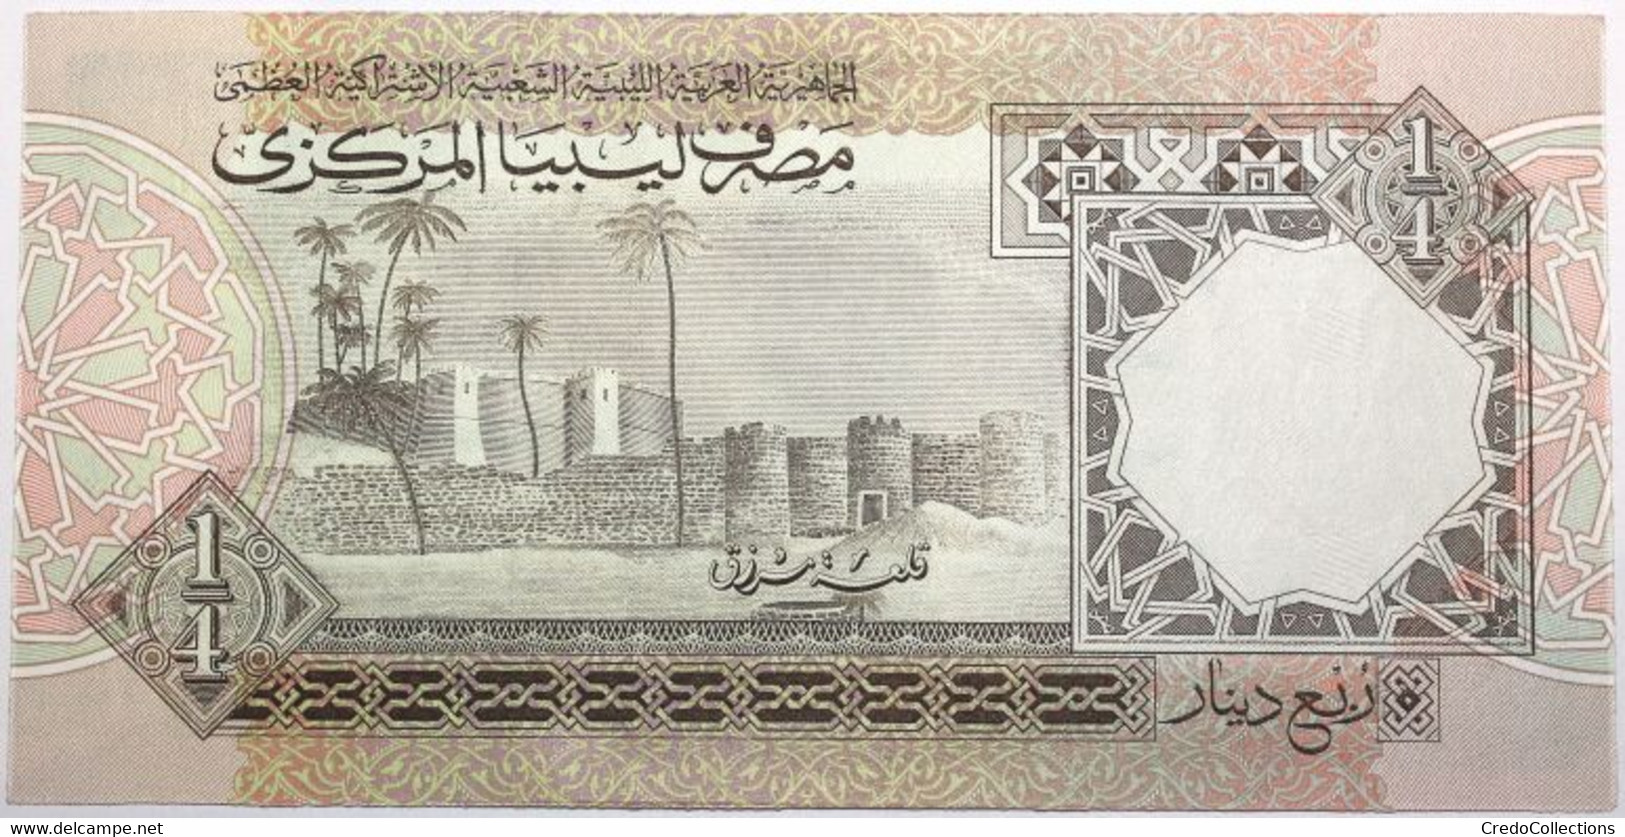 Libye - 0,25 Dinar - 1991 - PICK 57b - NEUF - Libya